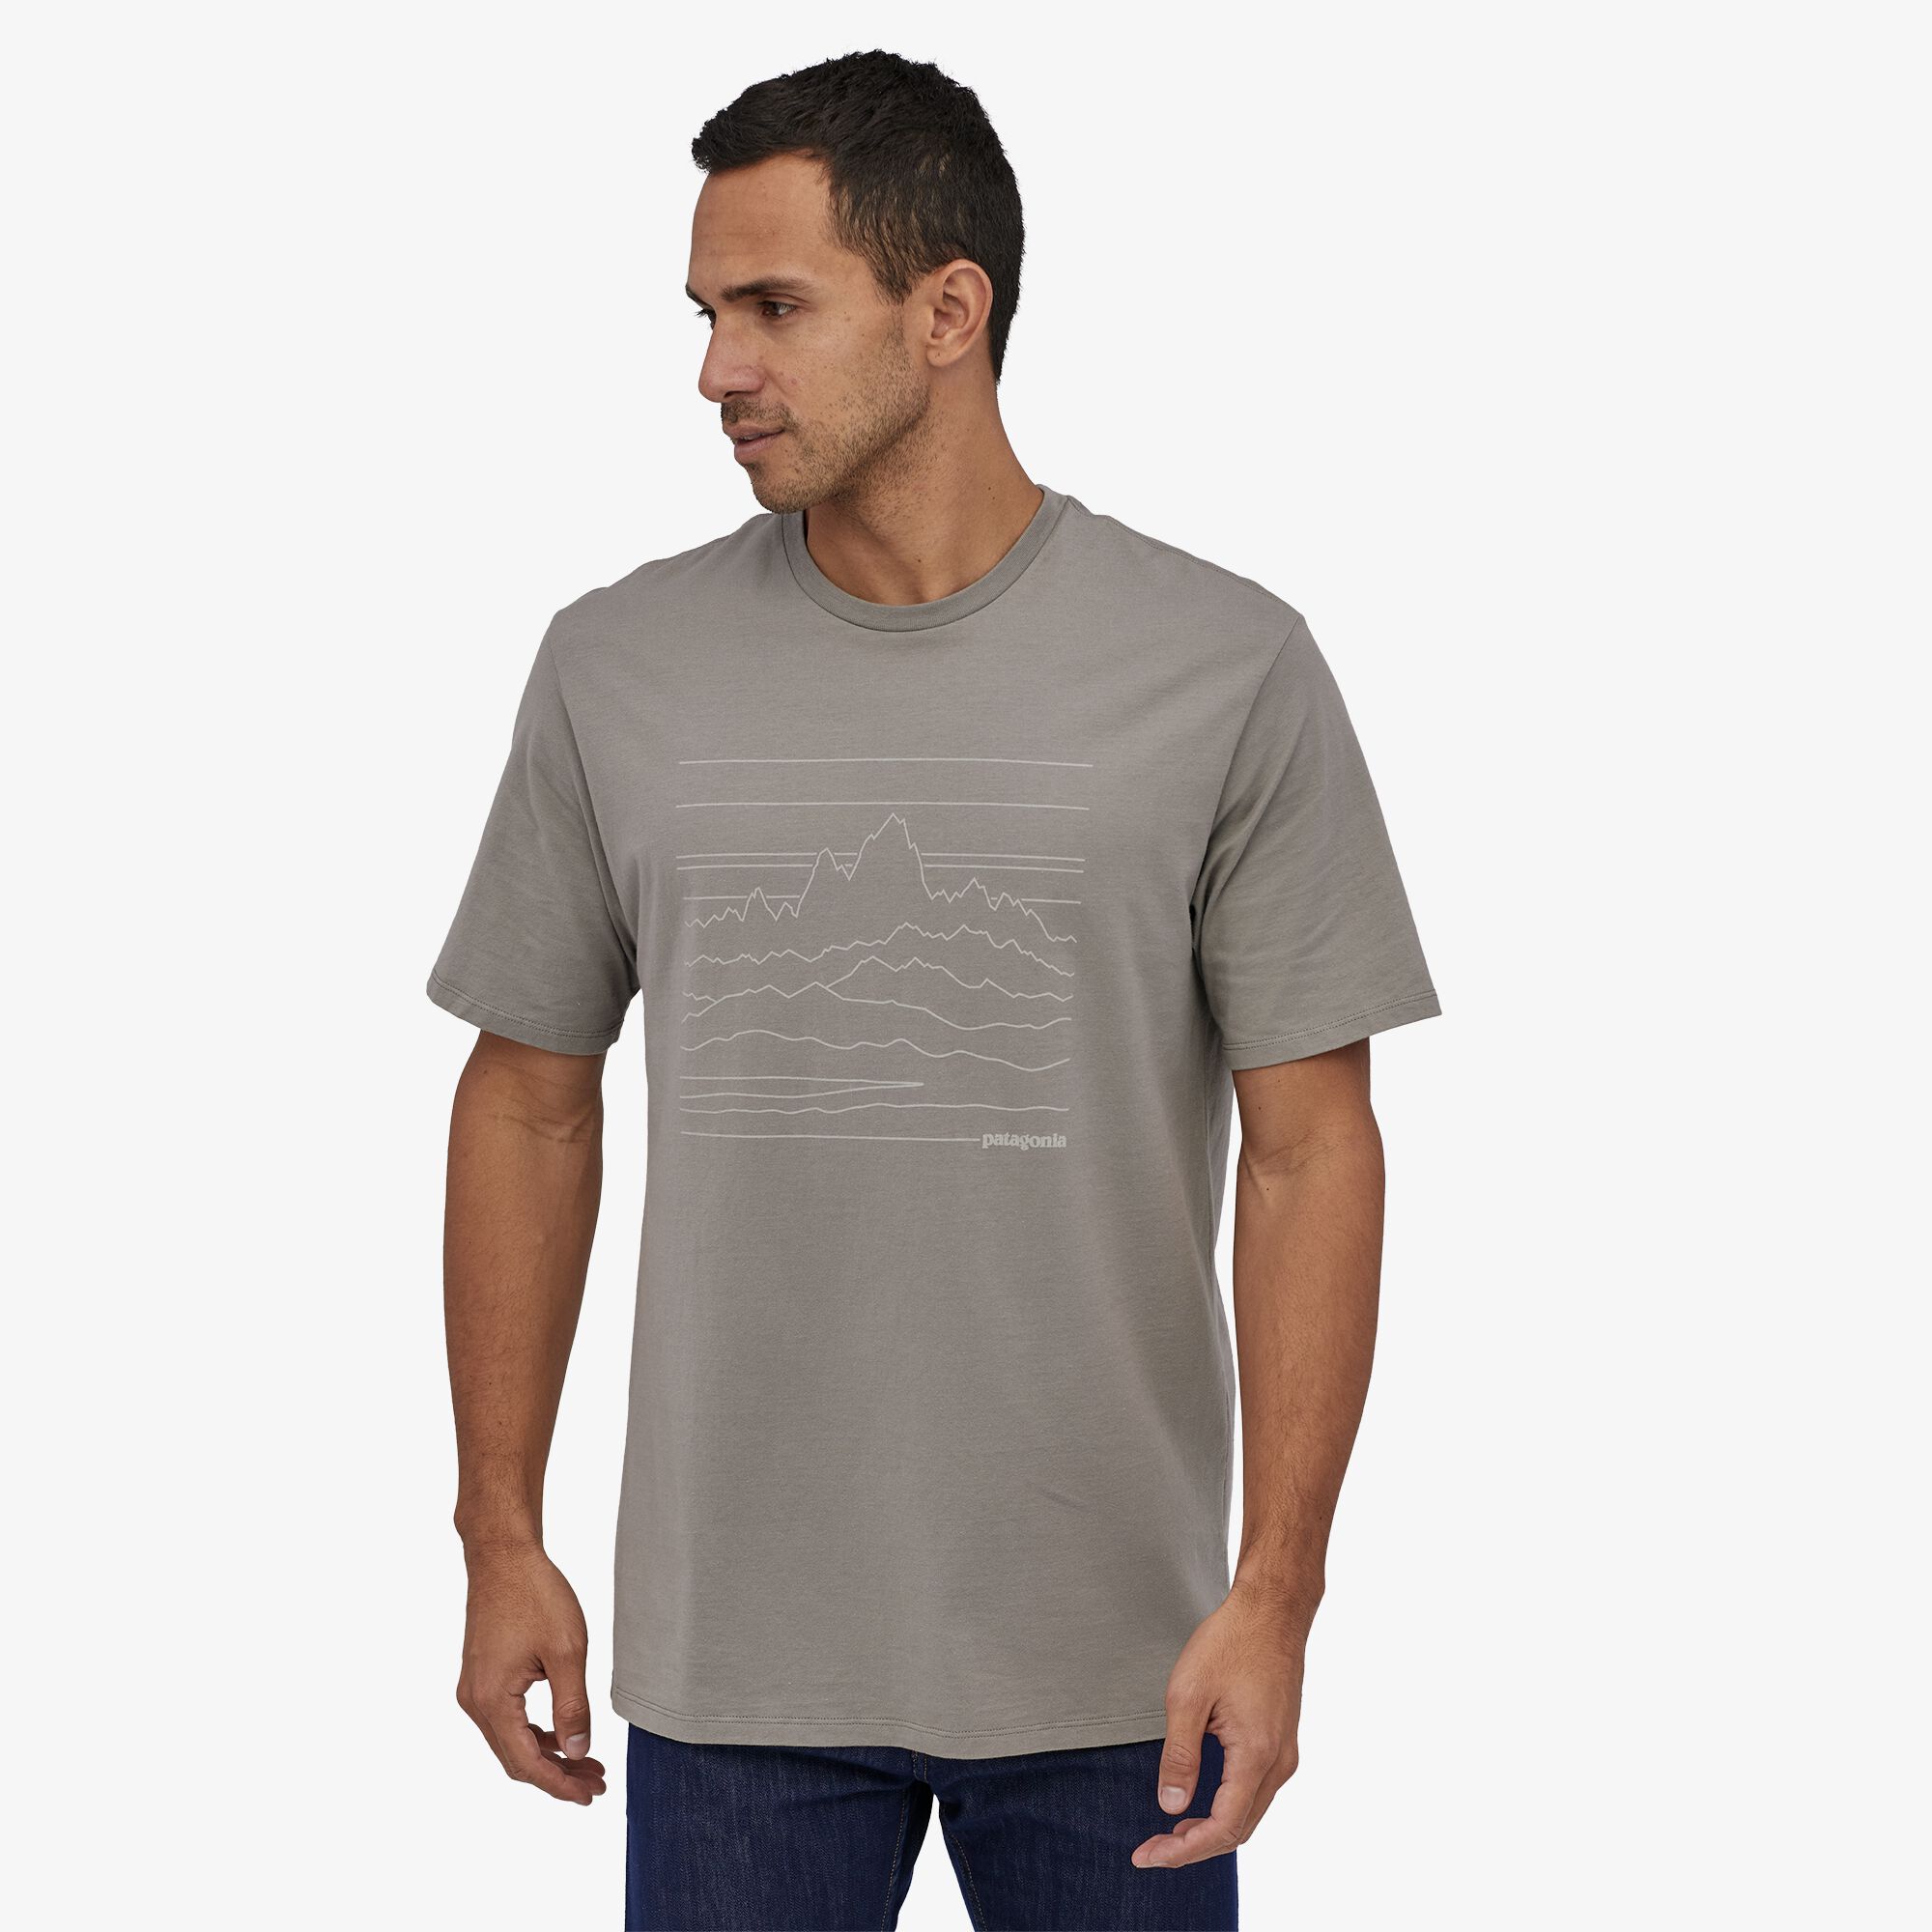 Patagonia Men's Up High Endurance Organic Cotton T-Shirt